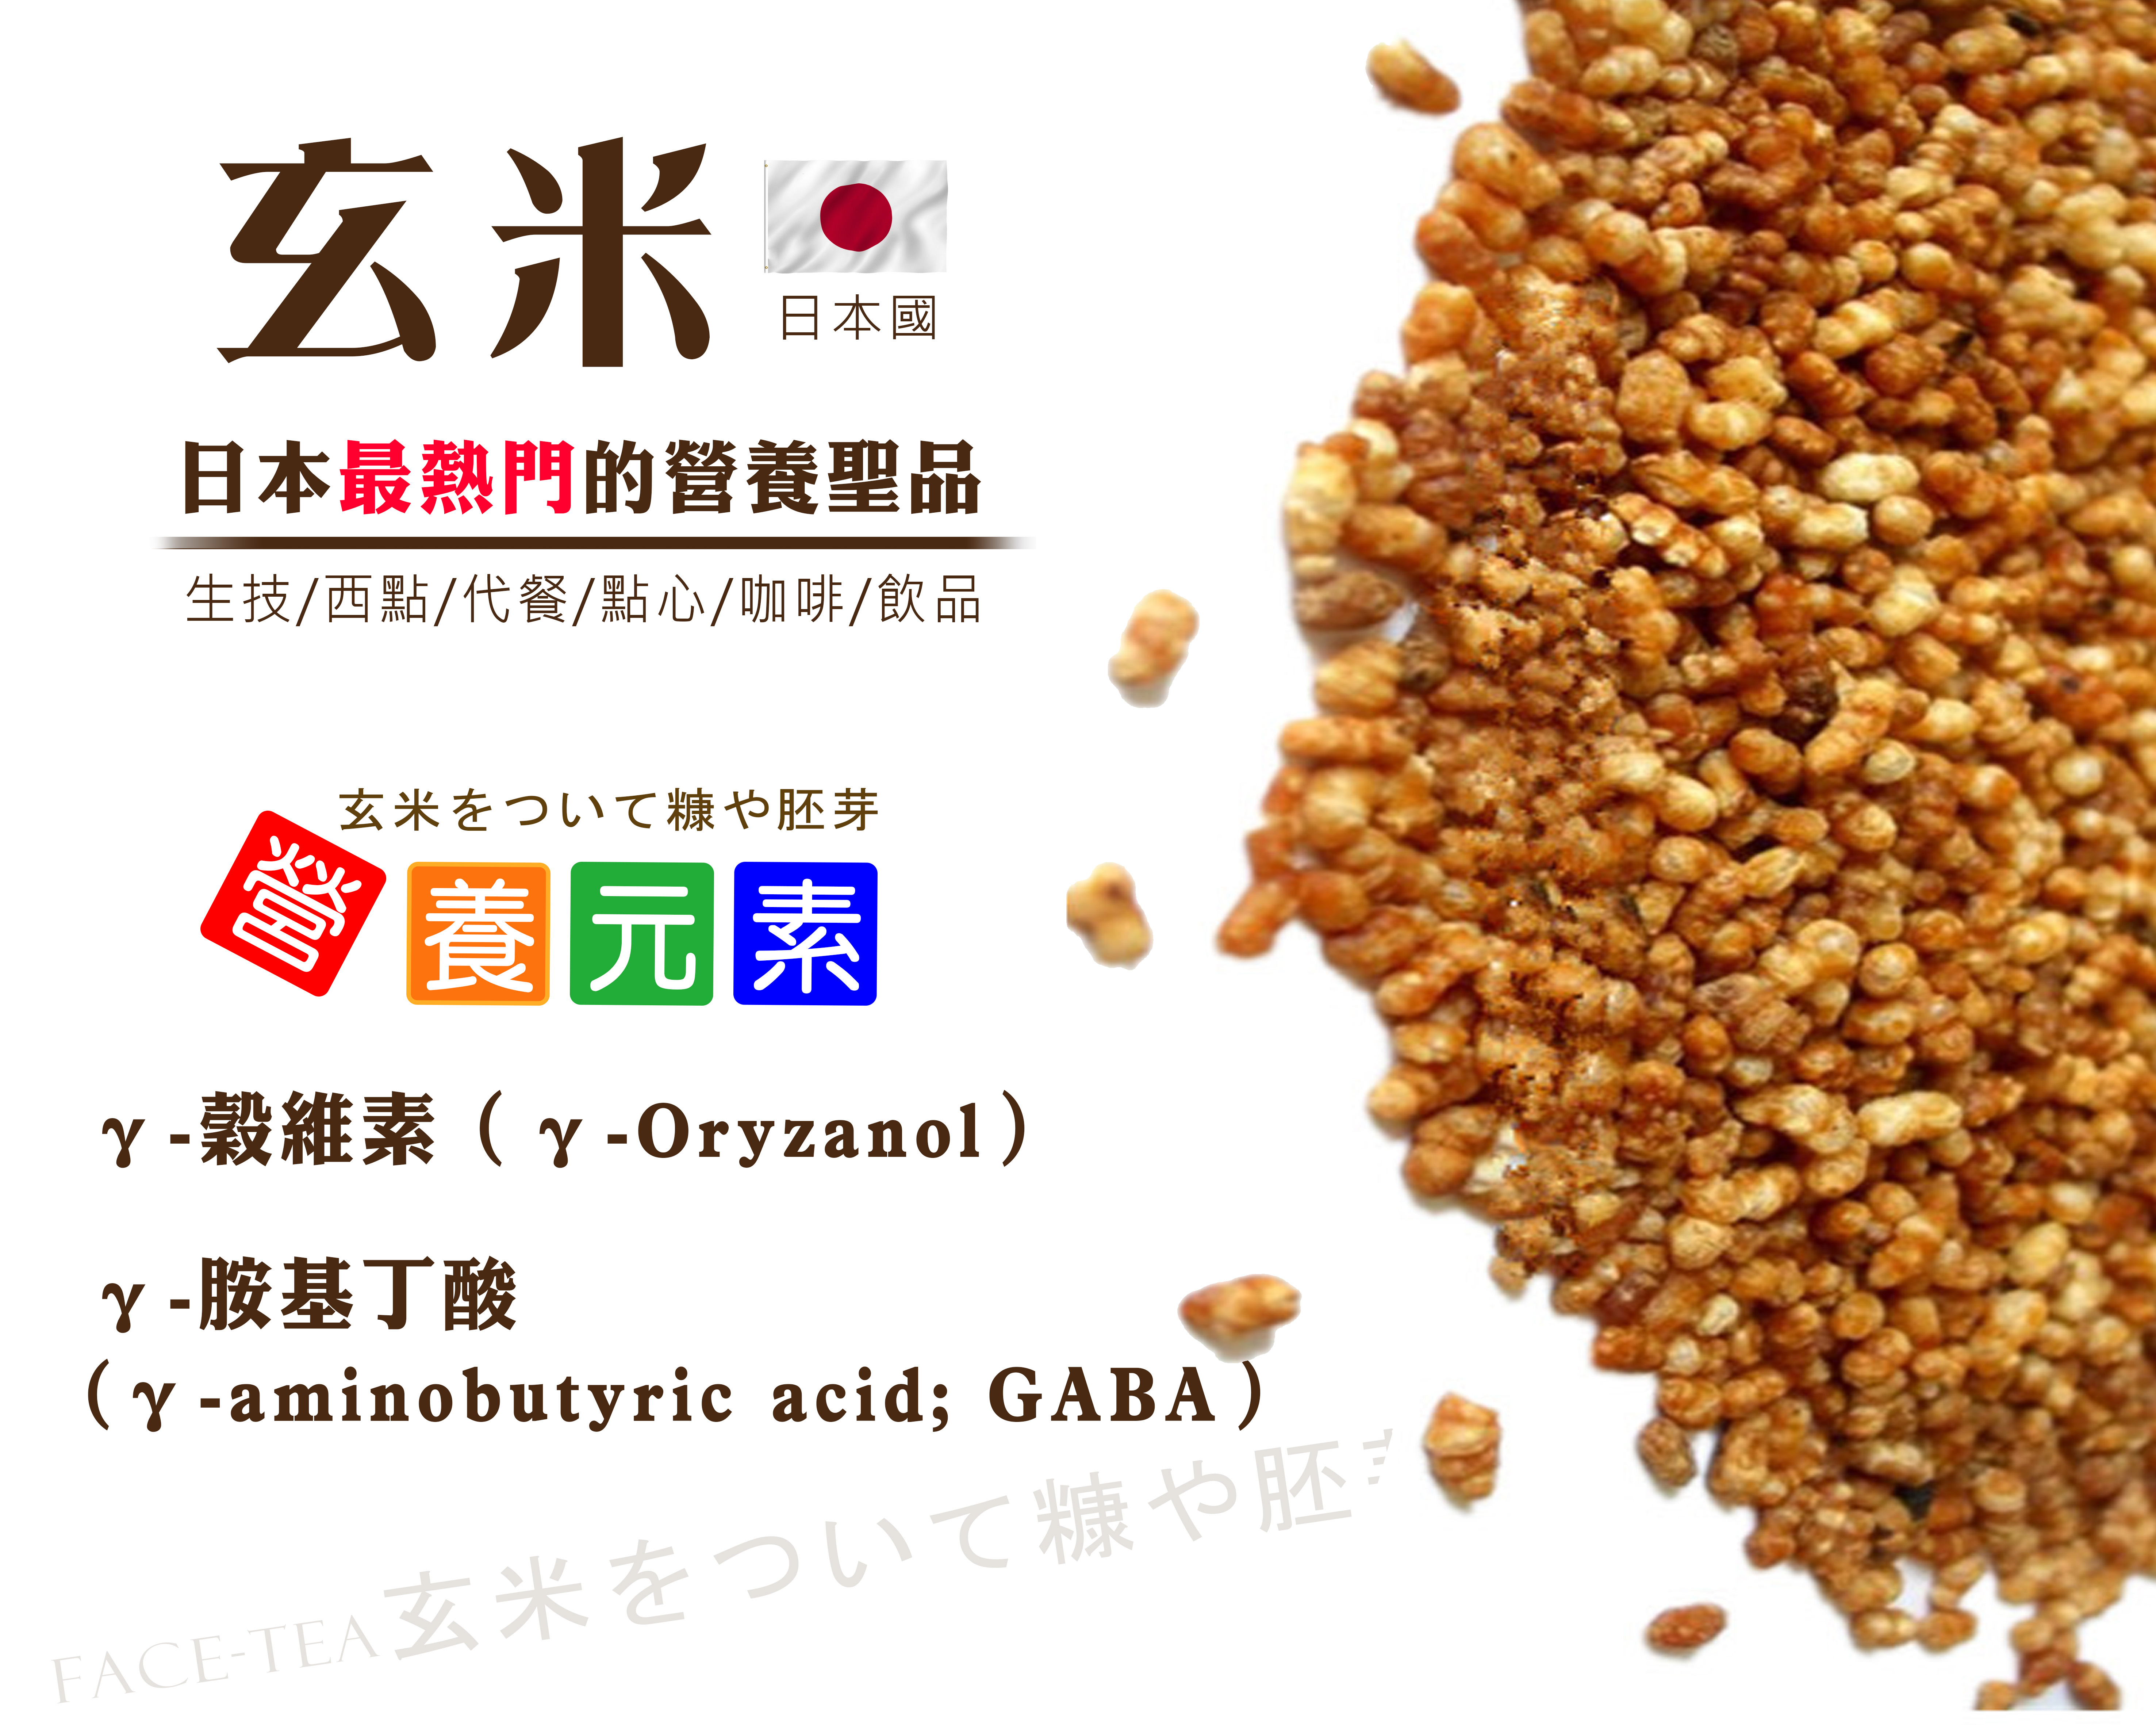 日本玄米粒 玄米をついて糠や胚芽 Facetea Bio Leader天然生技保健品供應廠